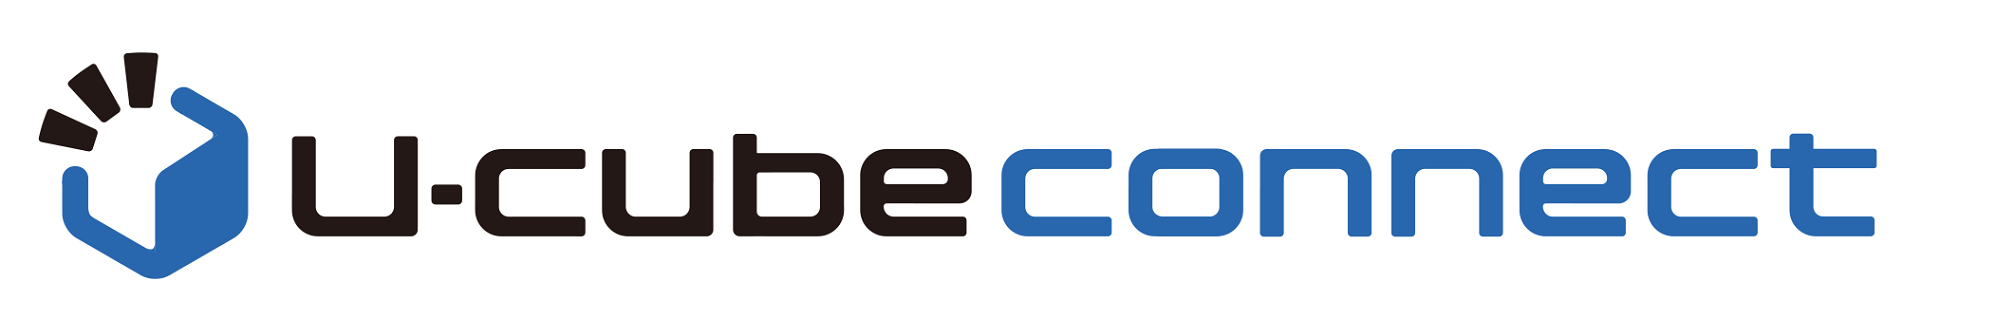 u-cube connectロゴ